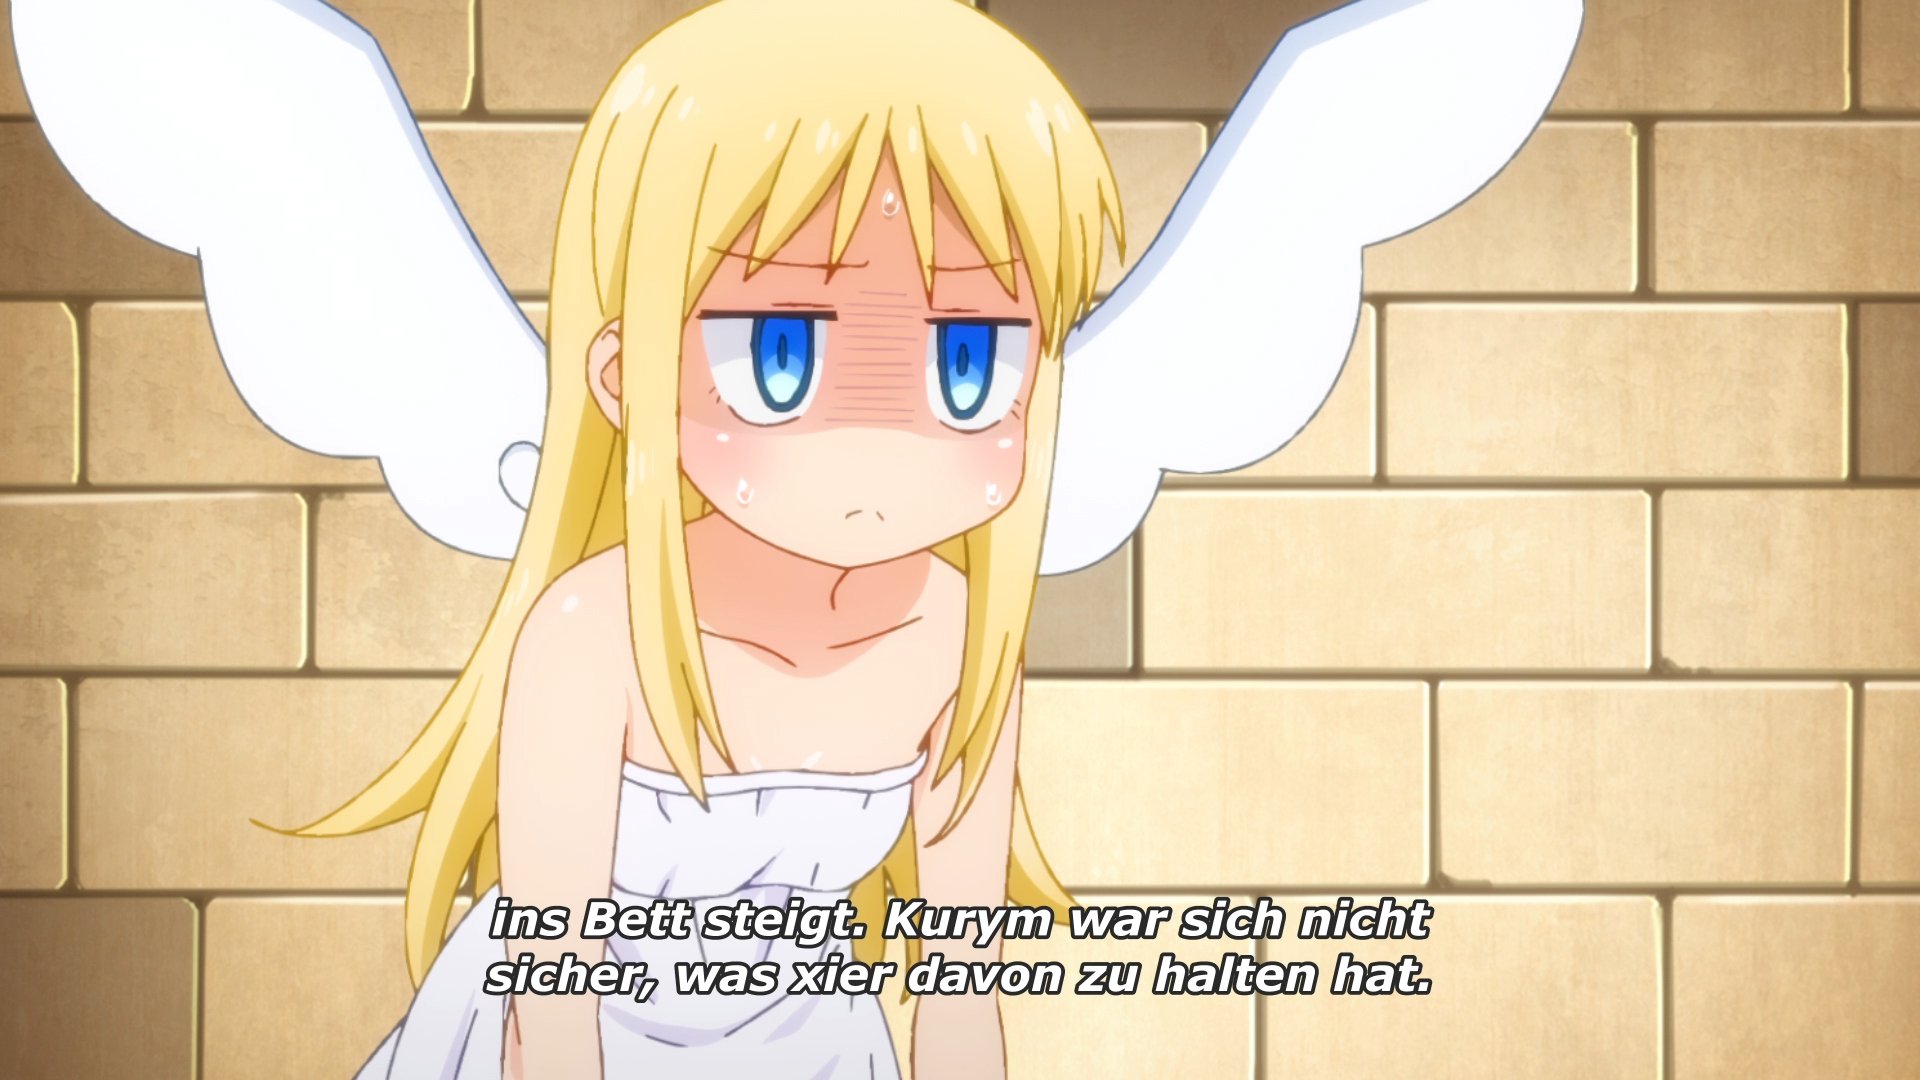 Anime-Screenshot: Kurym, ein Engel mit weissen Flügeln, langen blonden Haaren und entnervtem Gesicht lässt die Schultern hängen. Untertitel: »... ins Bett steigt. Kurym war sich nicht sicher, was xier davon zu halten hat«.